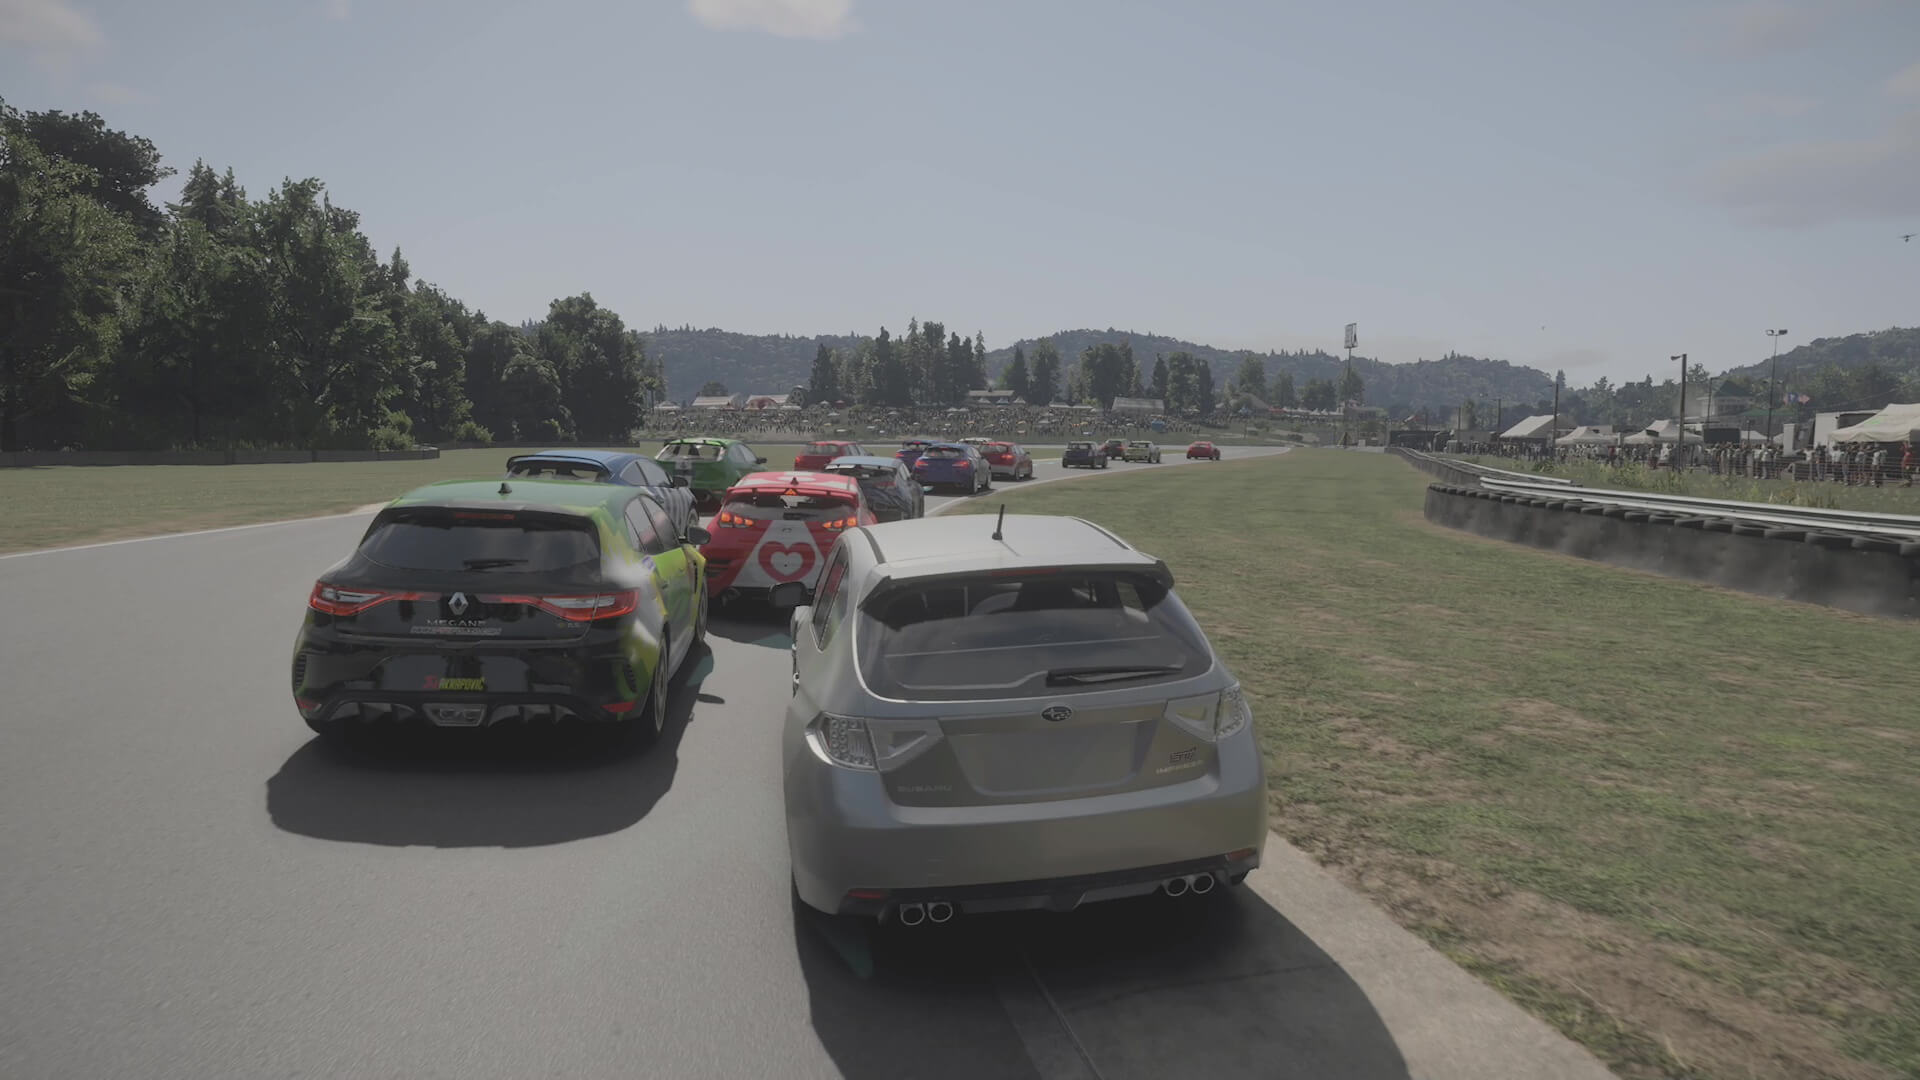 Скриншот Forza Motorsport, показывающий поток автомобилей, замедляющихся при повороте, с деревьями на заднем плане.